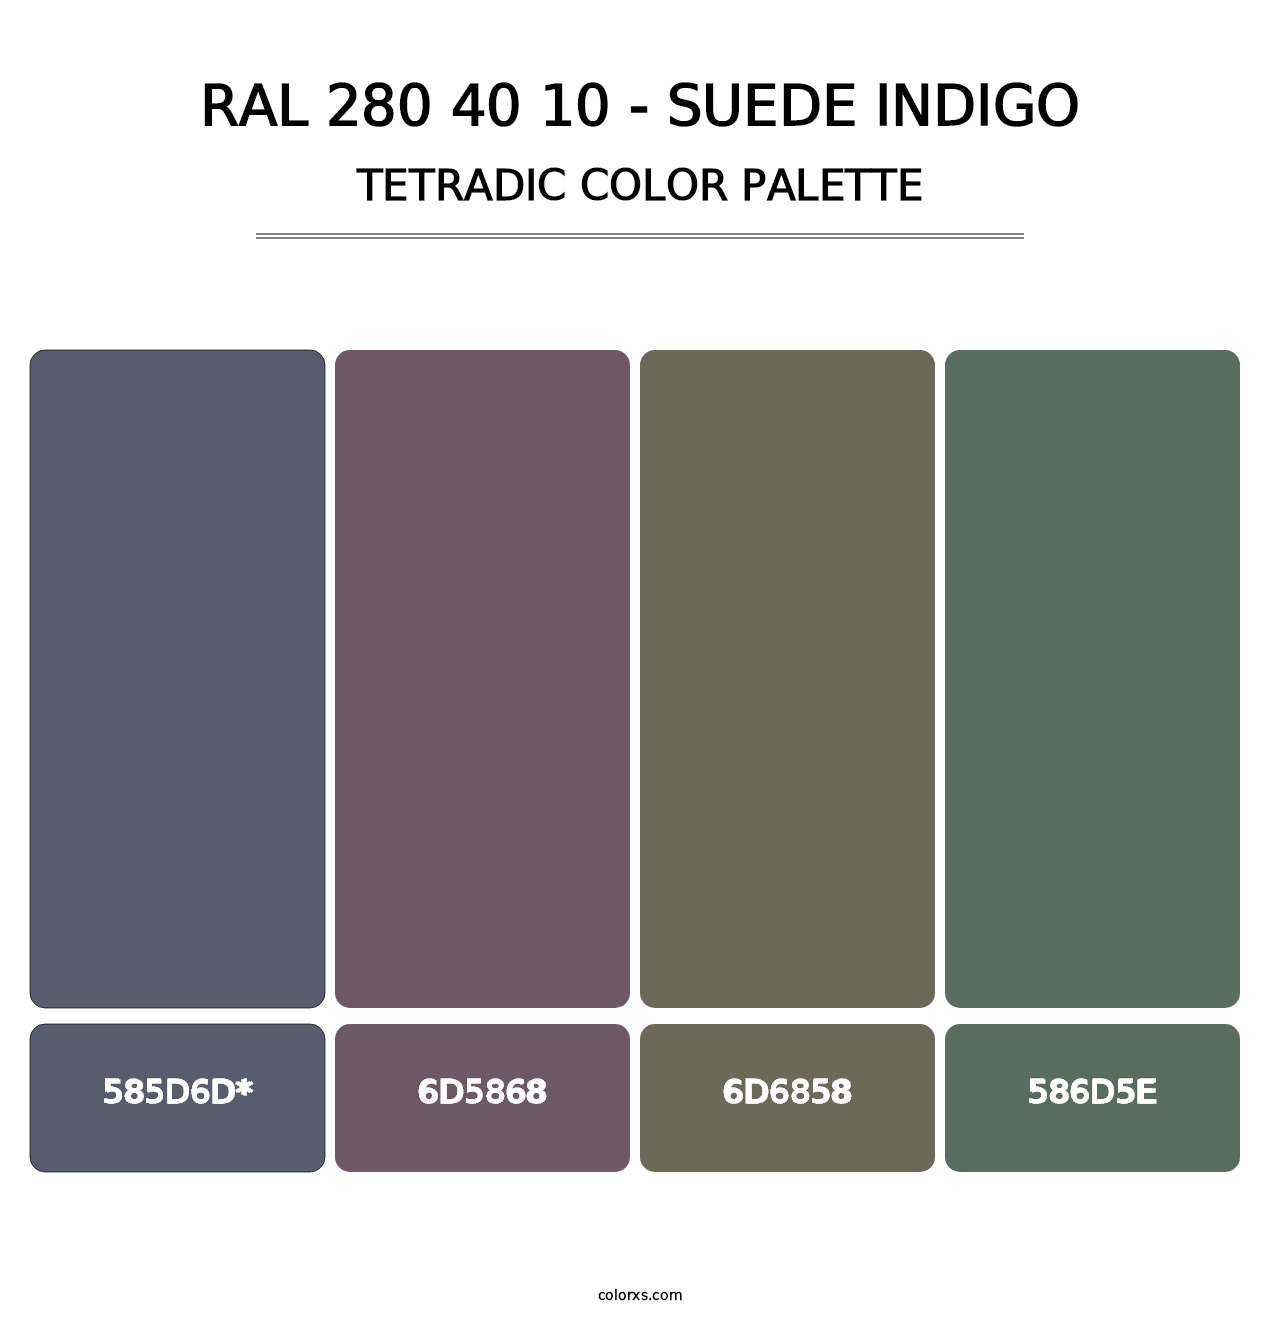 RAL 280 40 10 - Suede Indigo - Tetradic Color Palette